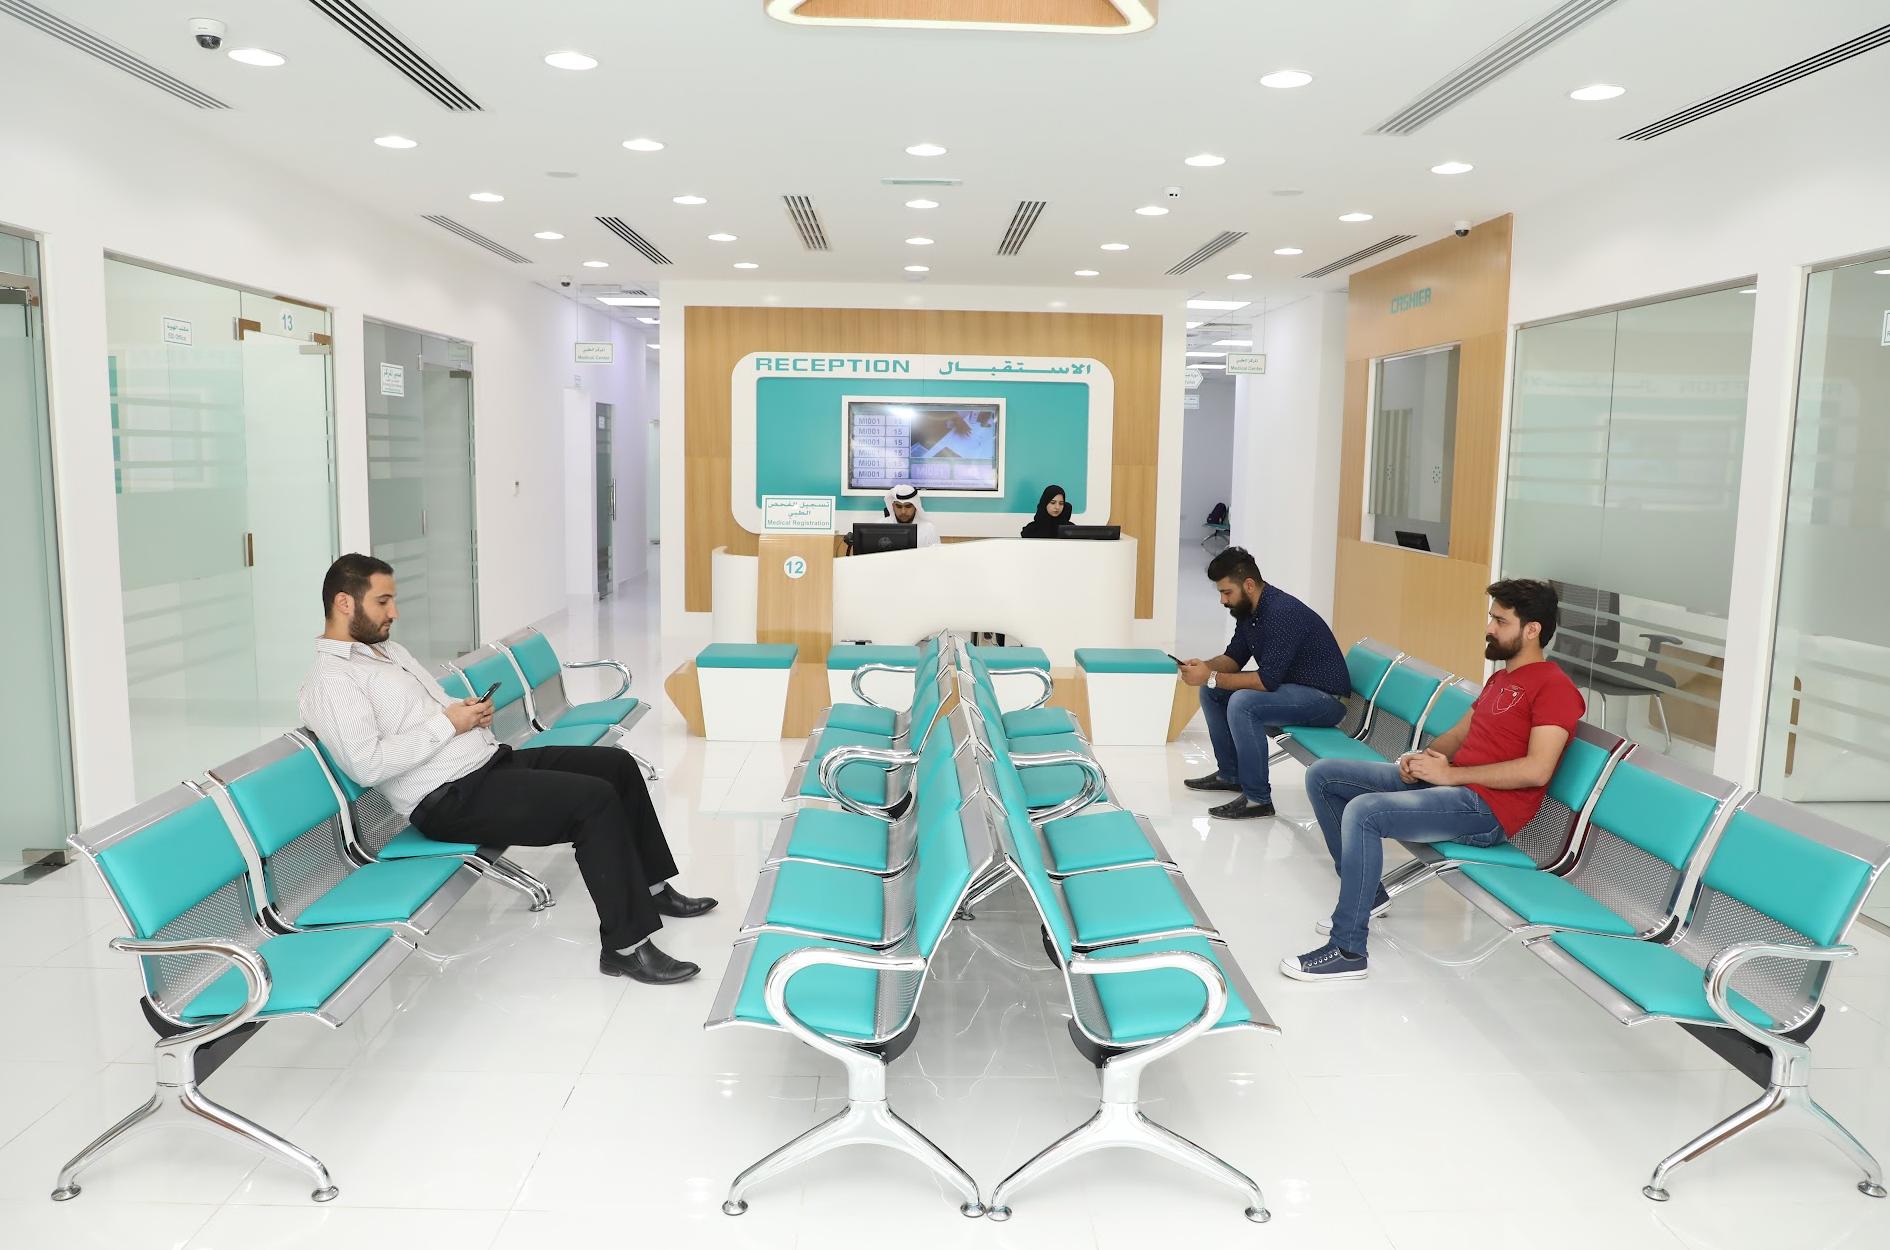 Laiq Medical Screening Center / مركز الفحص الطبي لائق